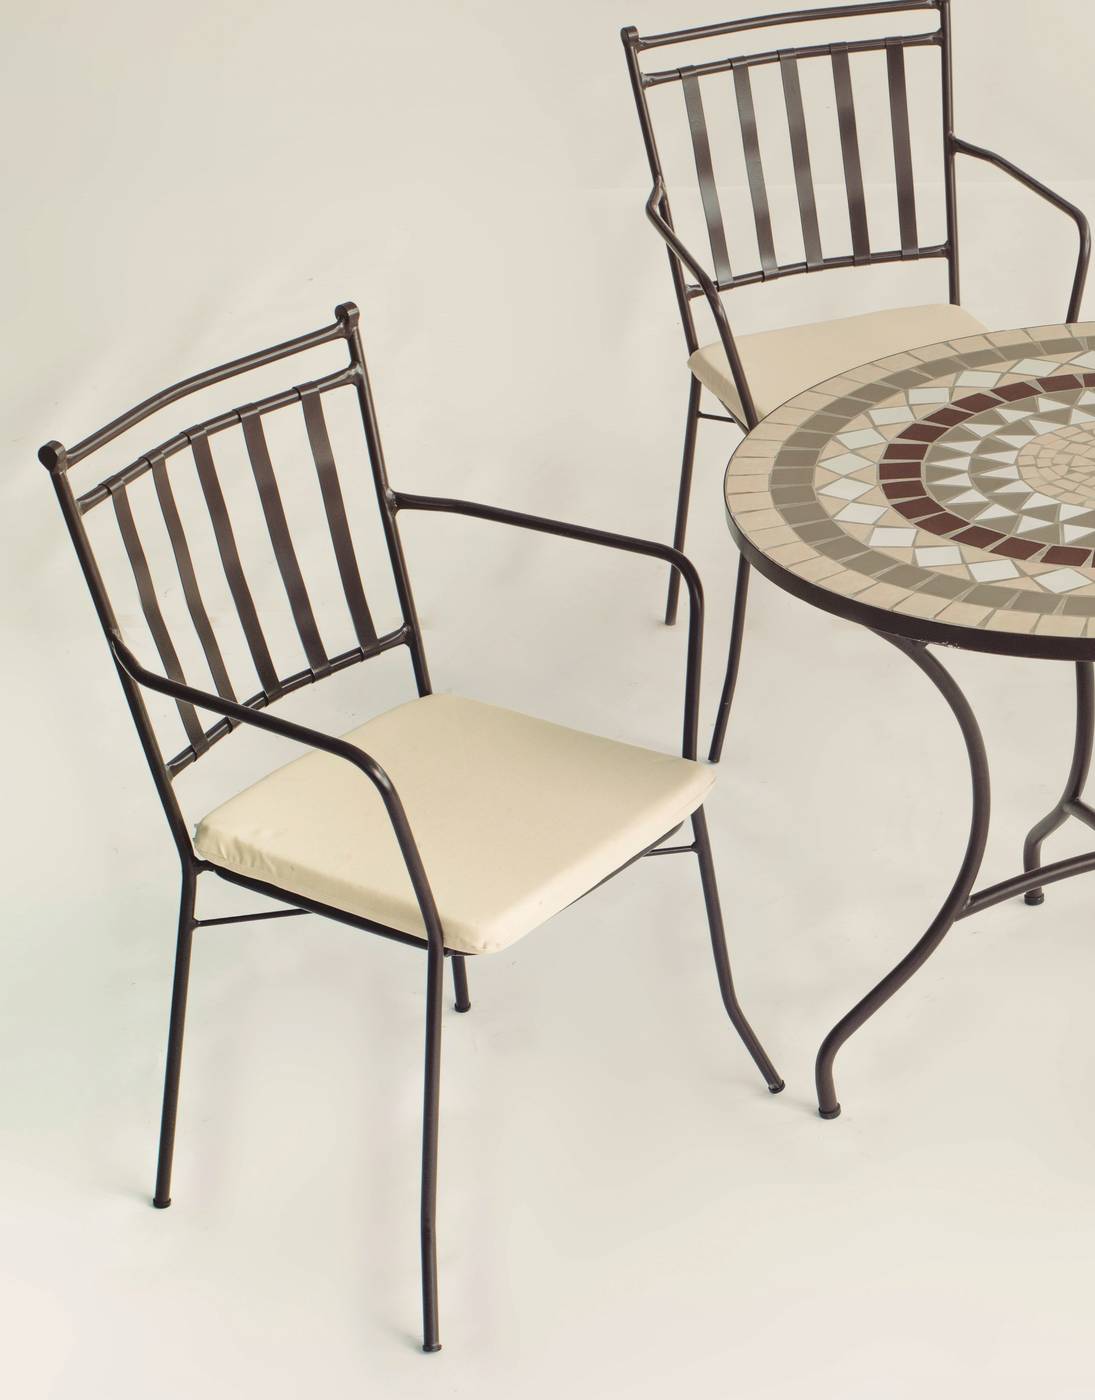 Conjunto Mosaico Alondra120-Shifa - Conjunto de forja color bronce: mesa con tablero mosaico de 120 cm + 4 sillones con cojines asiento.